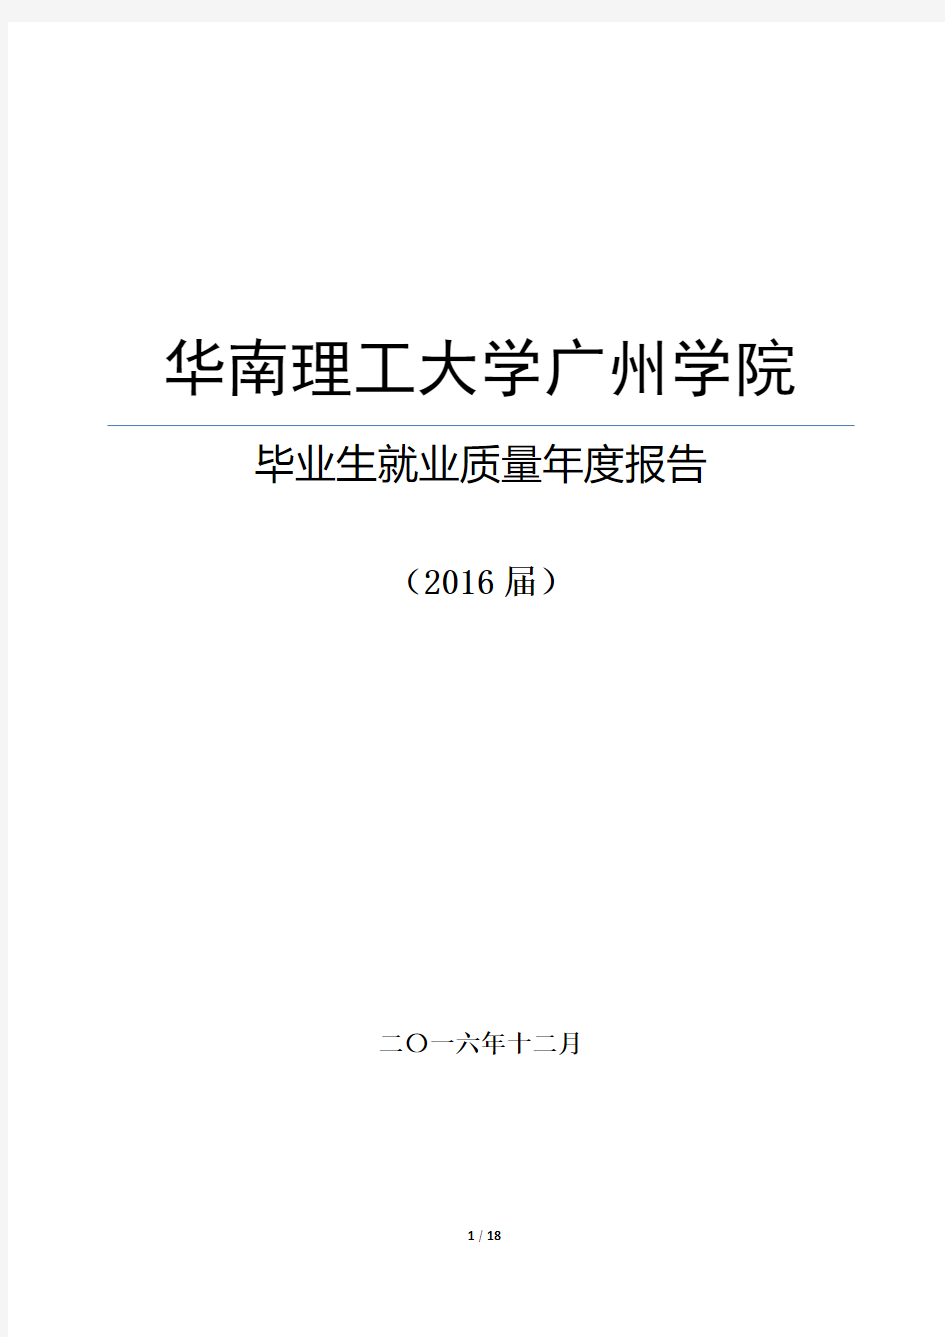 华南理工大学广州学院2016年度毕业生就业质量报告